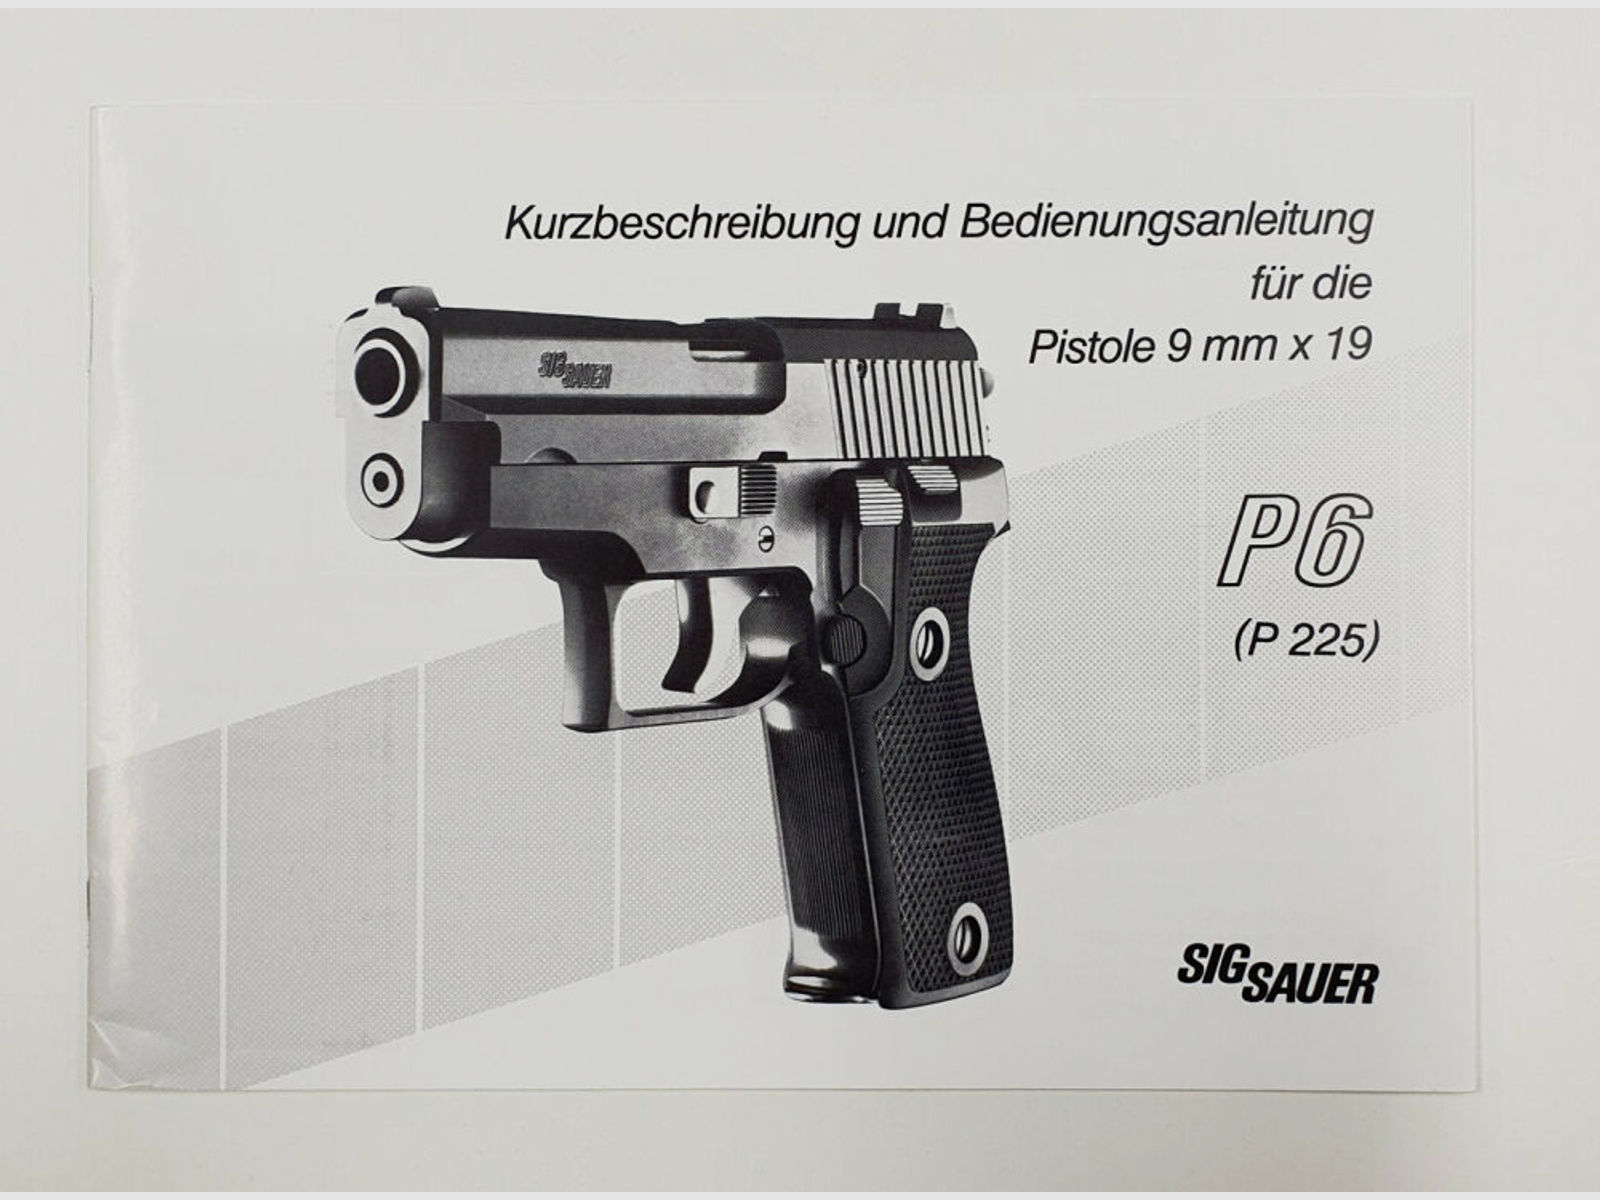 SIG Sauer	 Kurzbeschreibung und Bedienungsanleitung für die Pistole P6 / P225 9mm x 19 Zustand leicht gebraucht